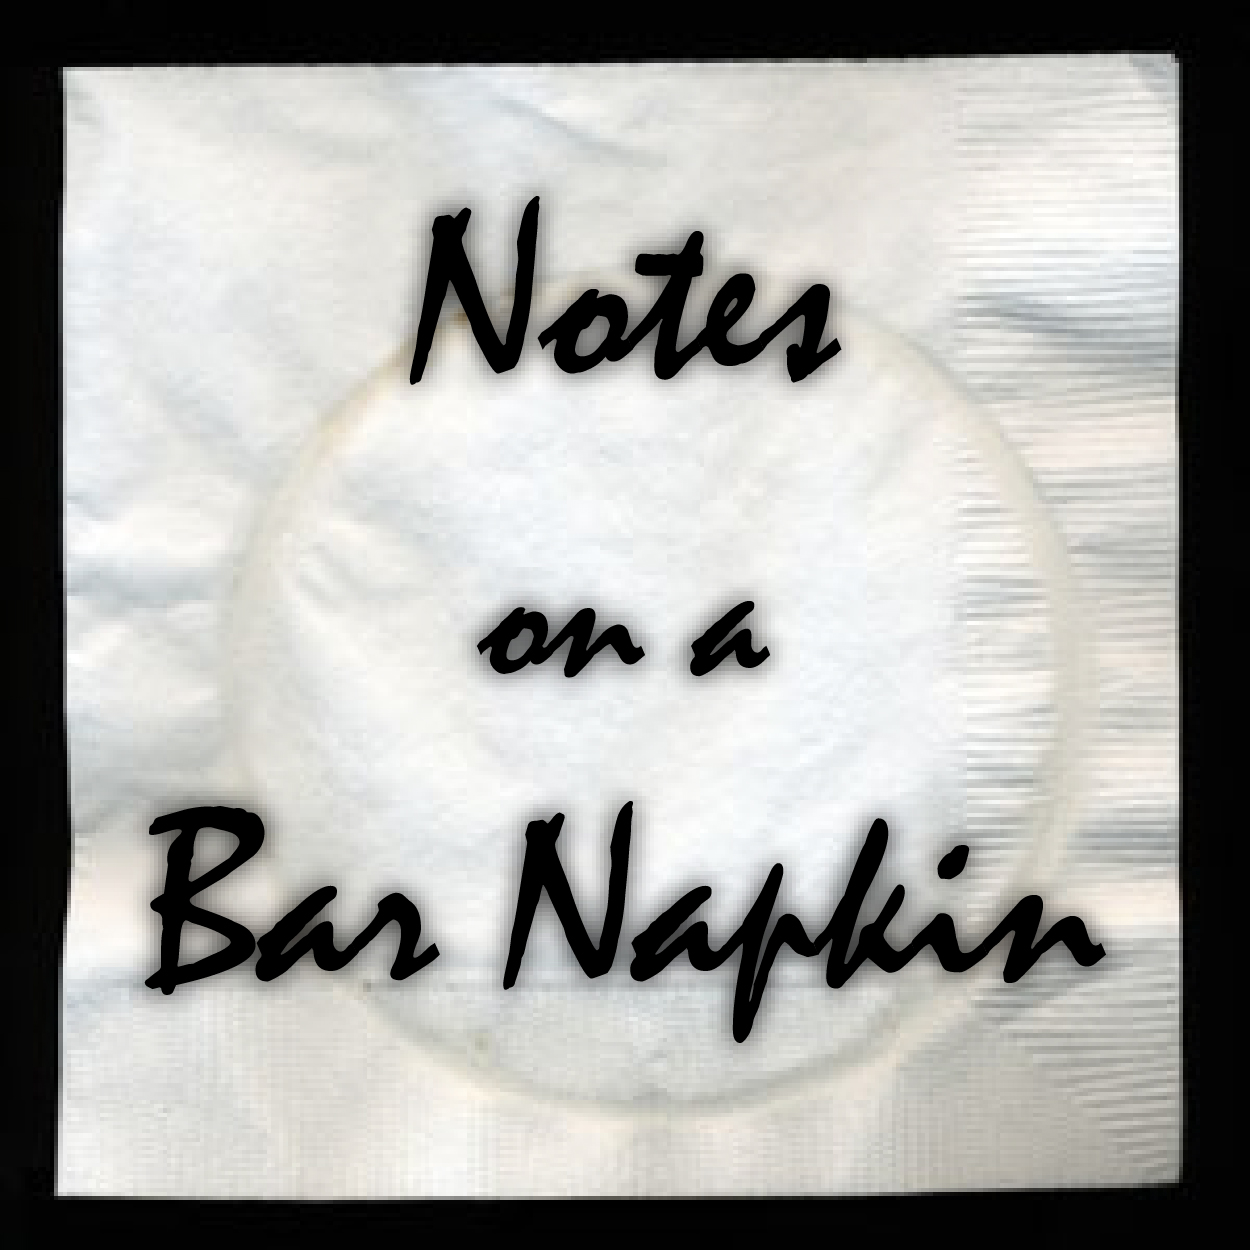 notes-on-a-bar-napkin.jpg